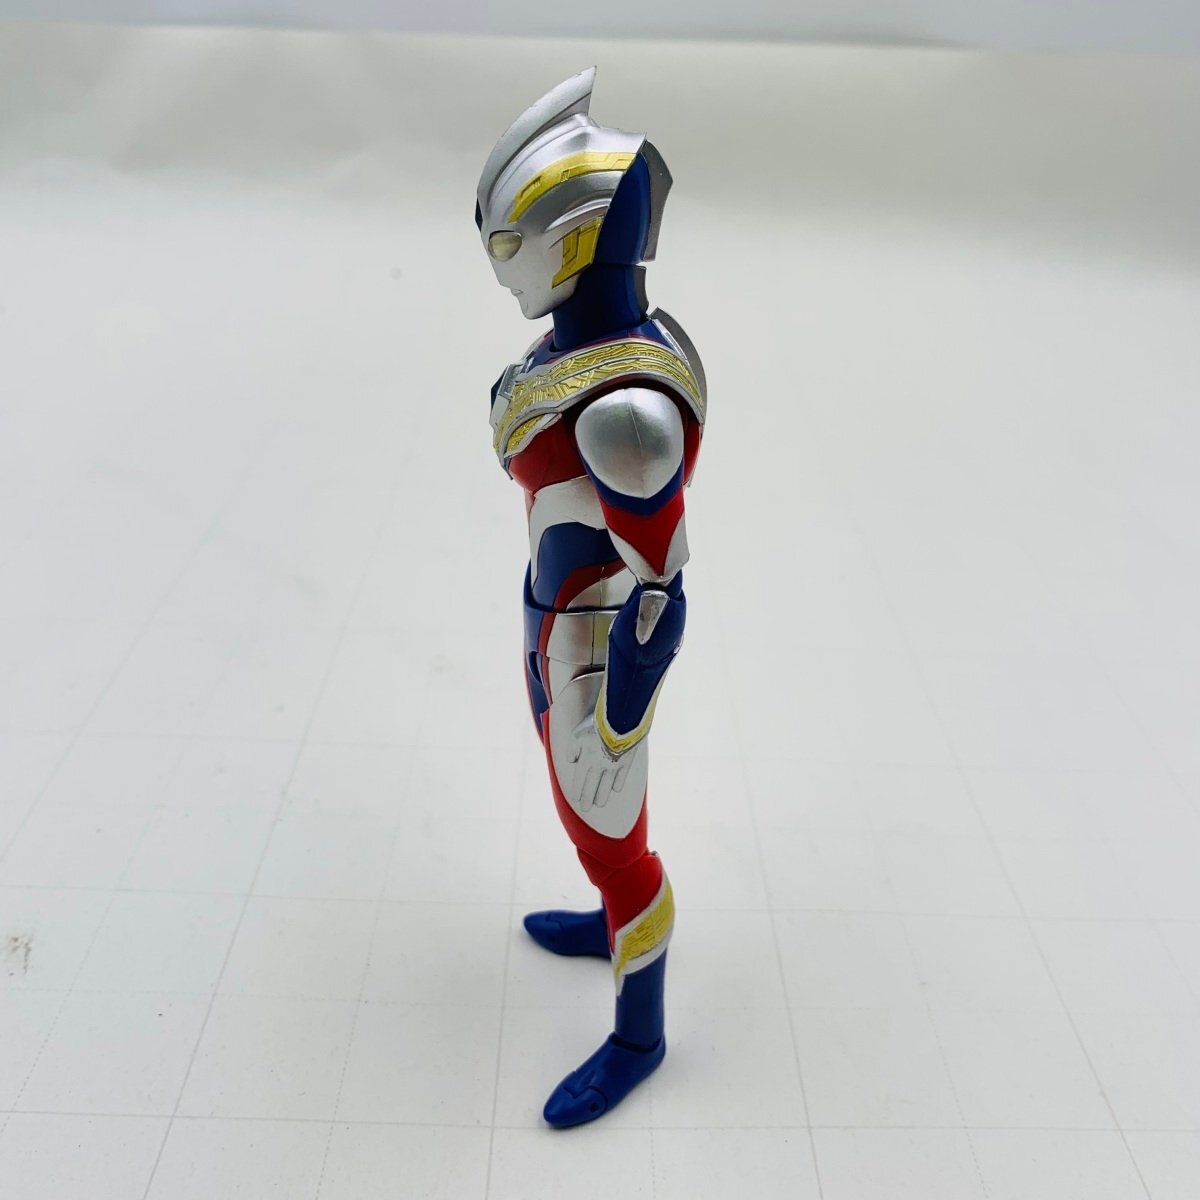  с дефектом б/у товар S.H.Figuarts figuarts Ultraman выключатель мульти- модель 